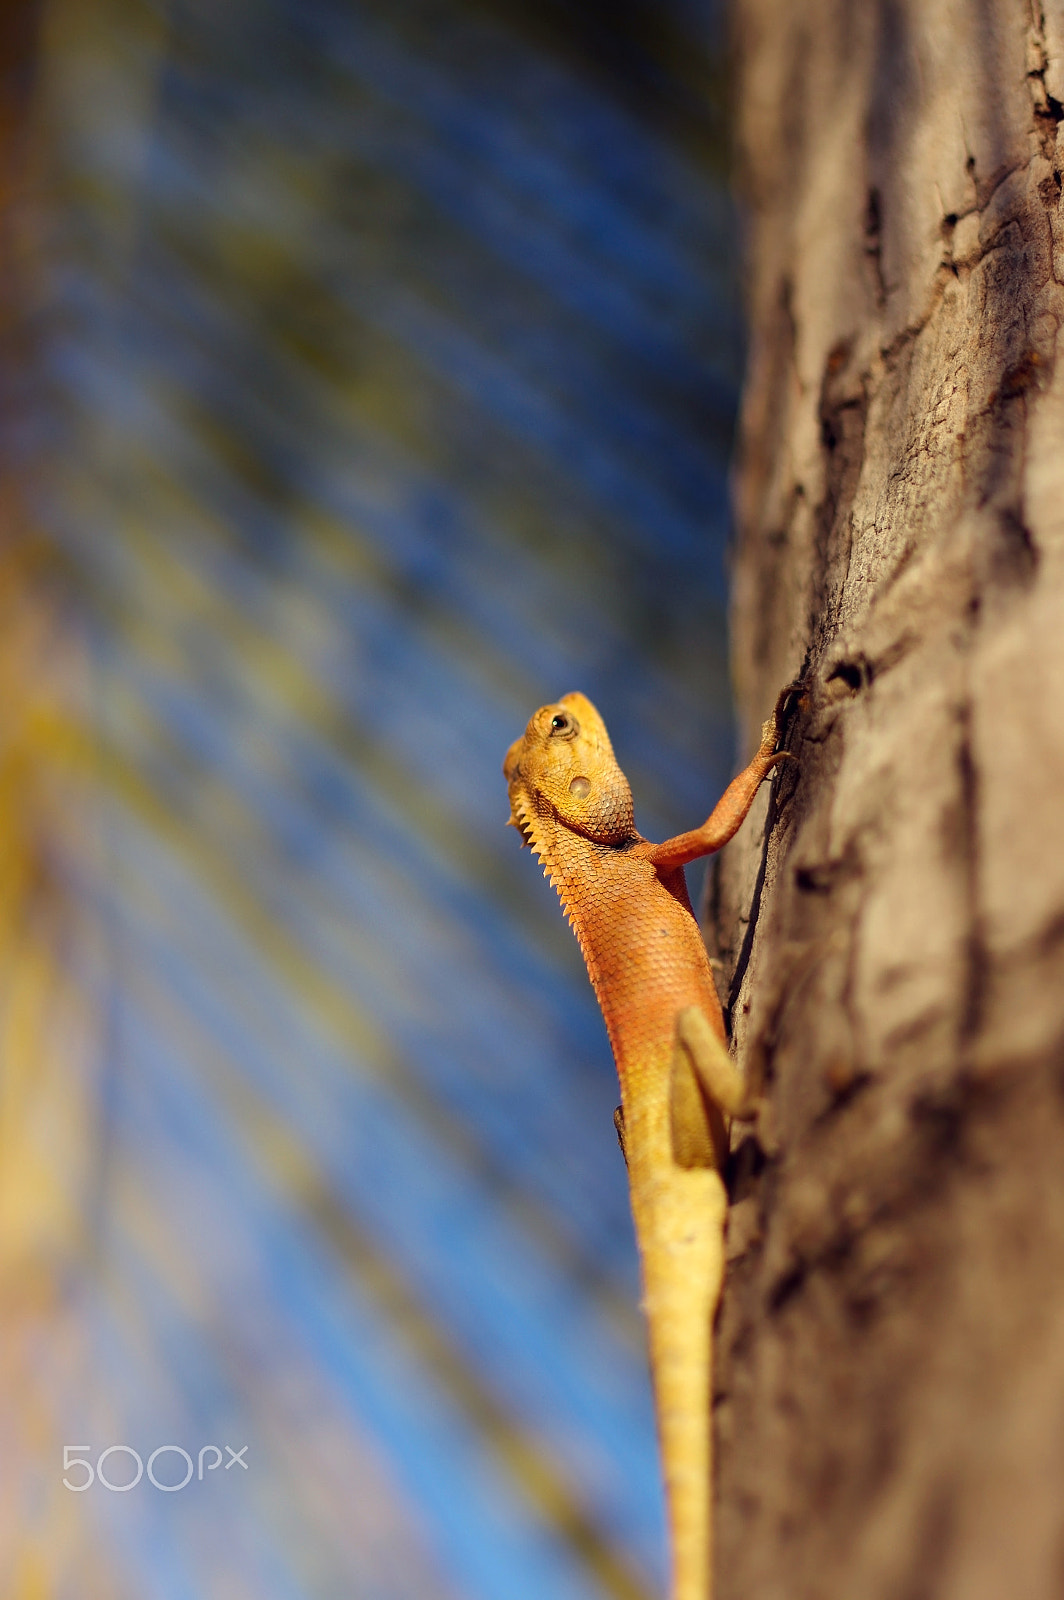 Pentax K-3 sample photo. Bright yellow asia garden lizard calotes versicolour crested on photography